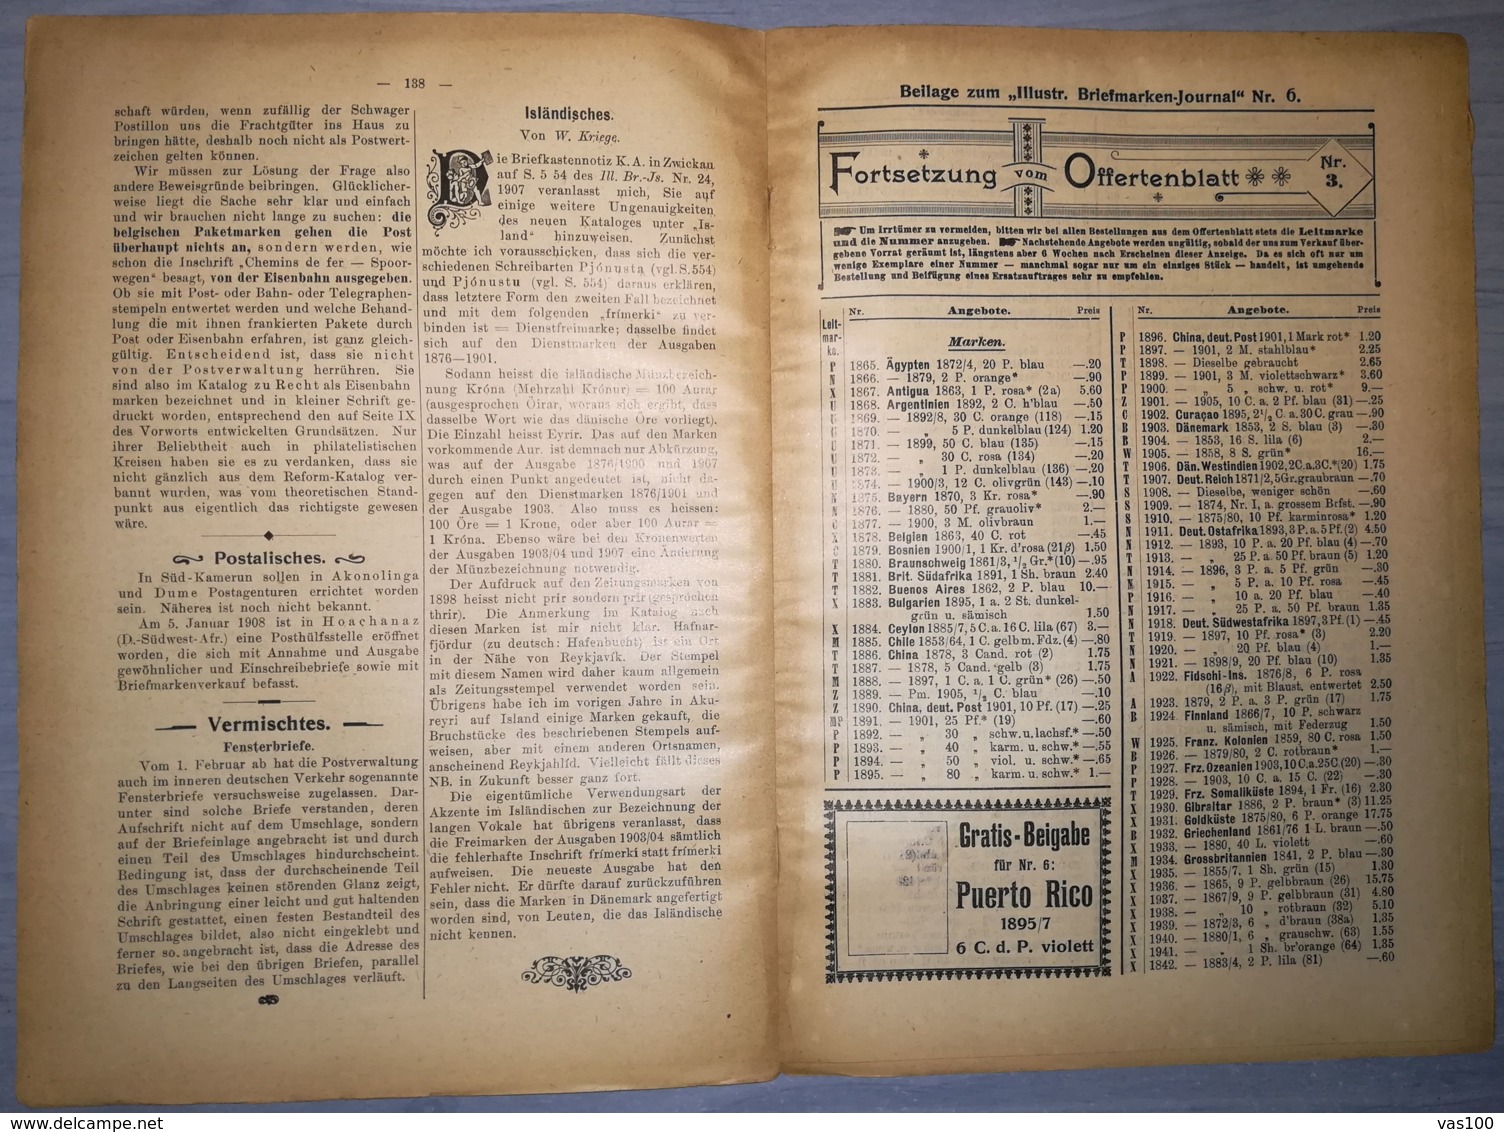 ILLUSTRATED STAMPS JOURNAL- ILLUSTRIERTES BRIEFMARKEN JOURNAL, LEIPZIG, NR 6, MARCH 1908, GERMANY - Tedesche (prima Del 1940)